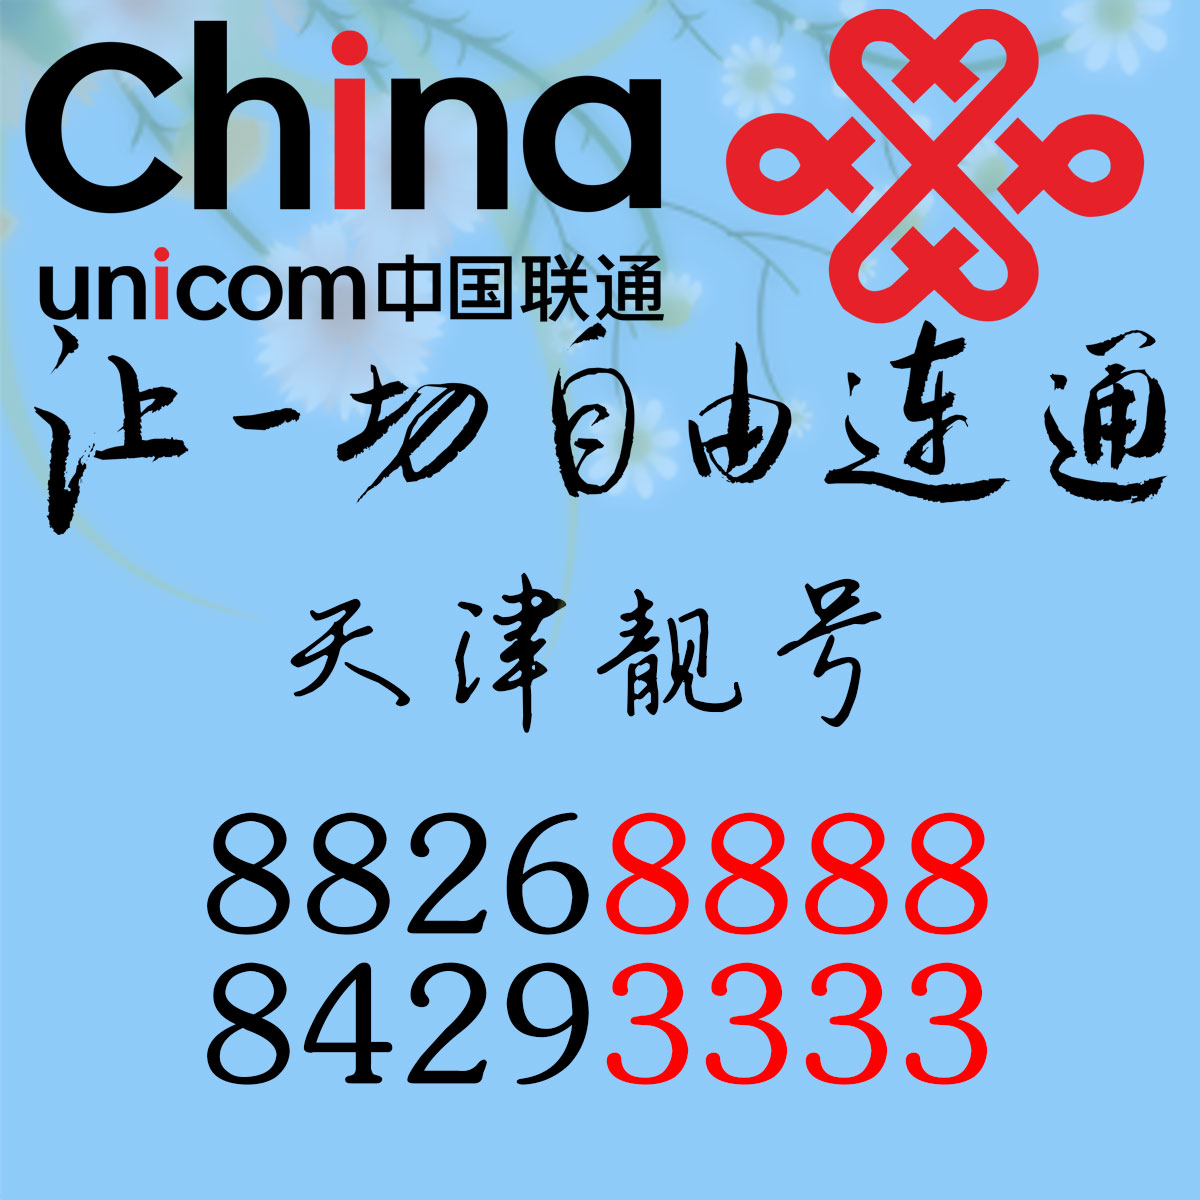 天津022中国联通固定电话号码 AAAA 靓号84